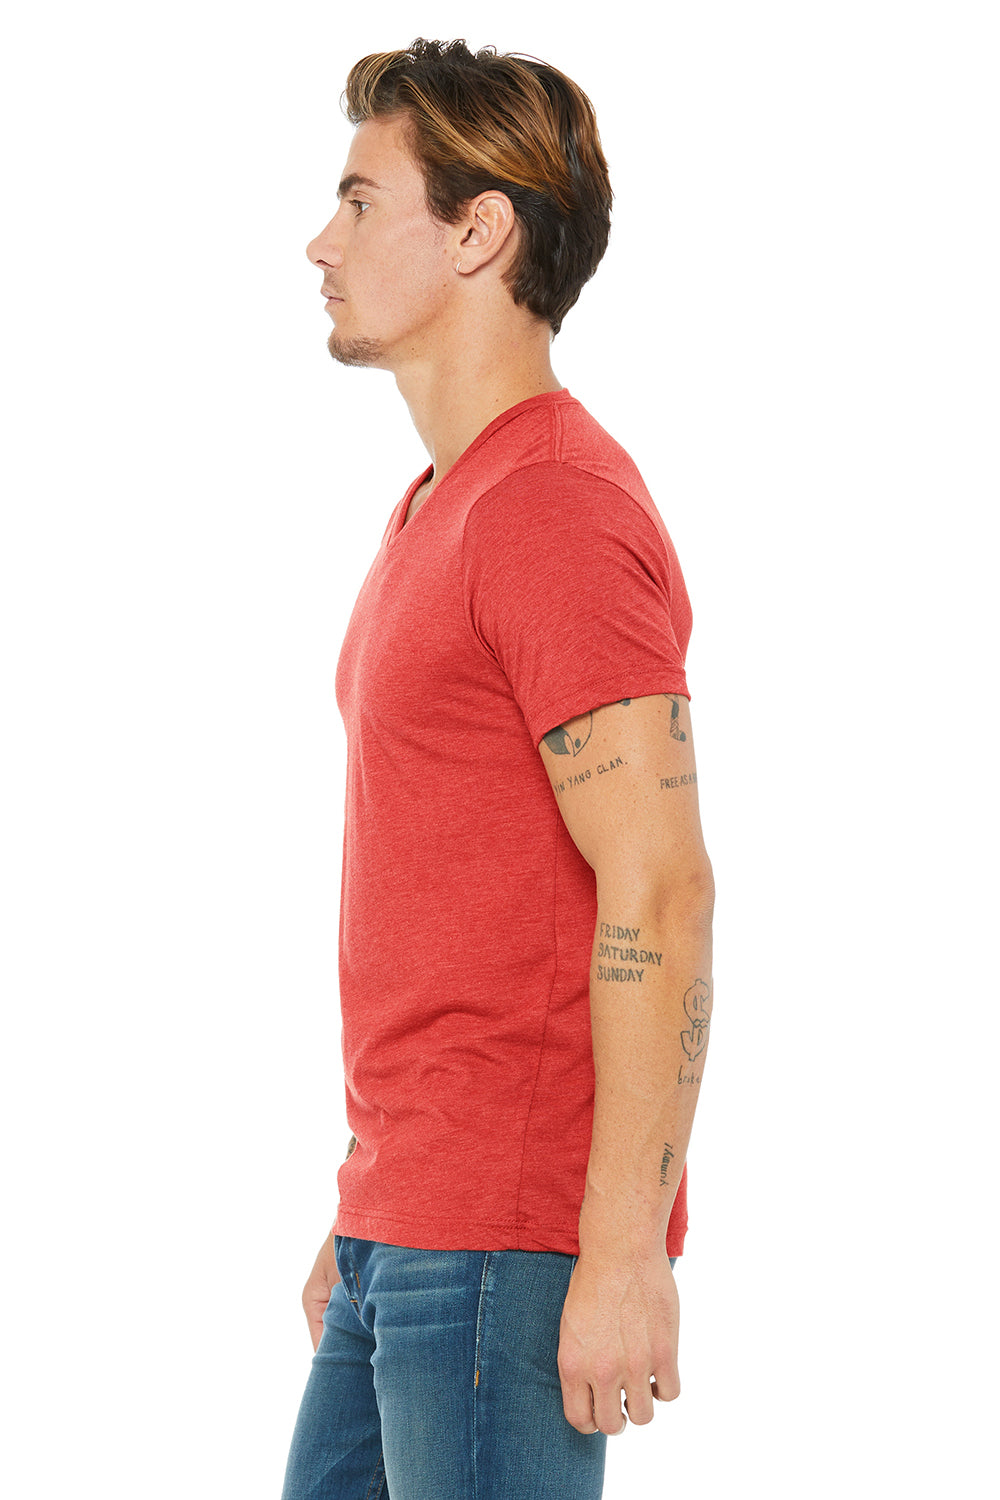 Bella + Canvas BC3415/3415C/3415 Mens Short Sleeve V-Neck T-Shirt Red Model Side